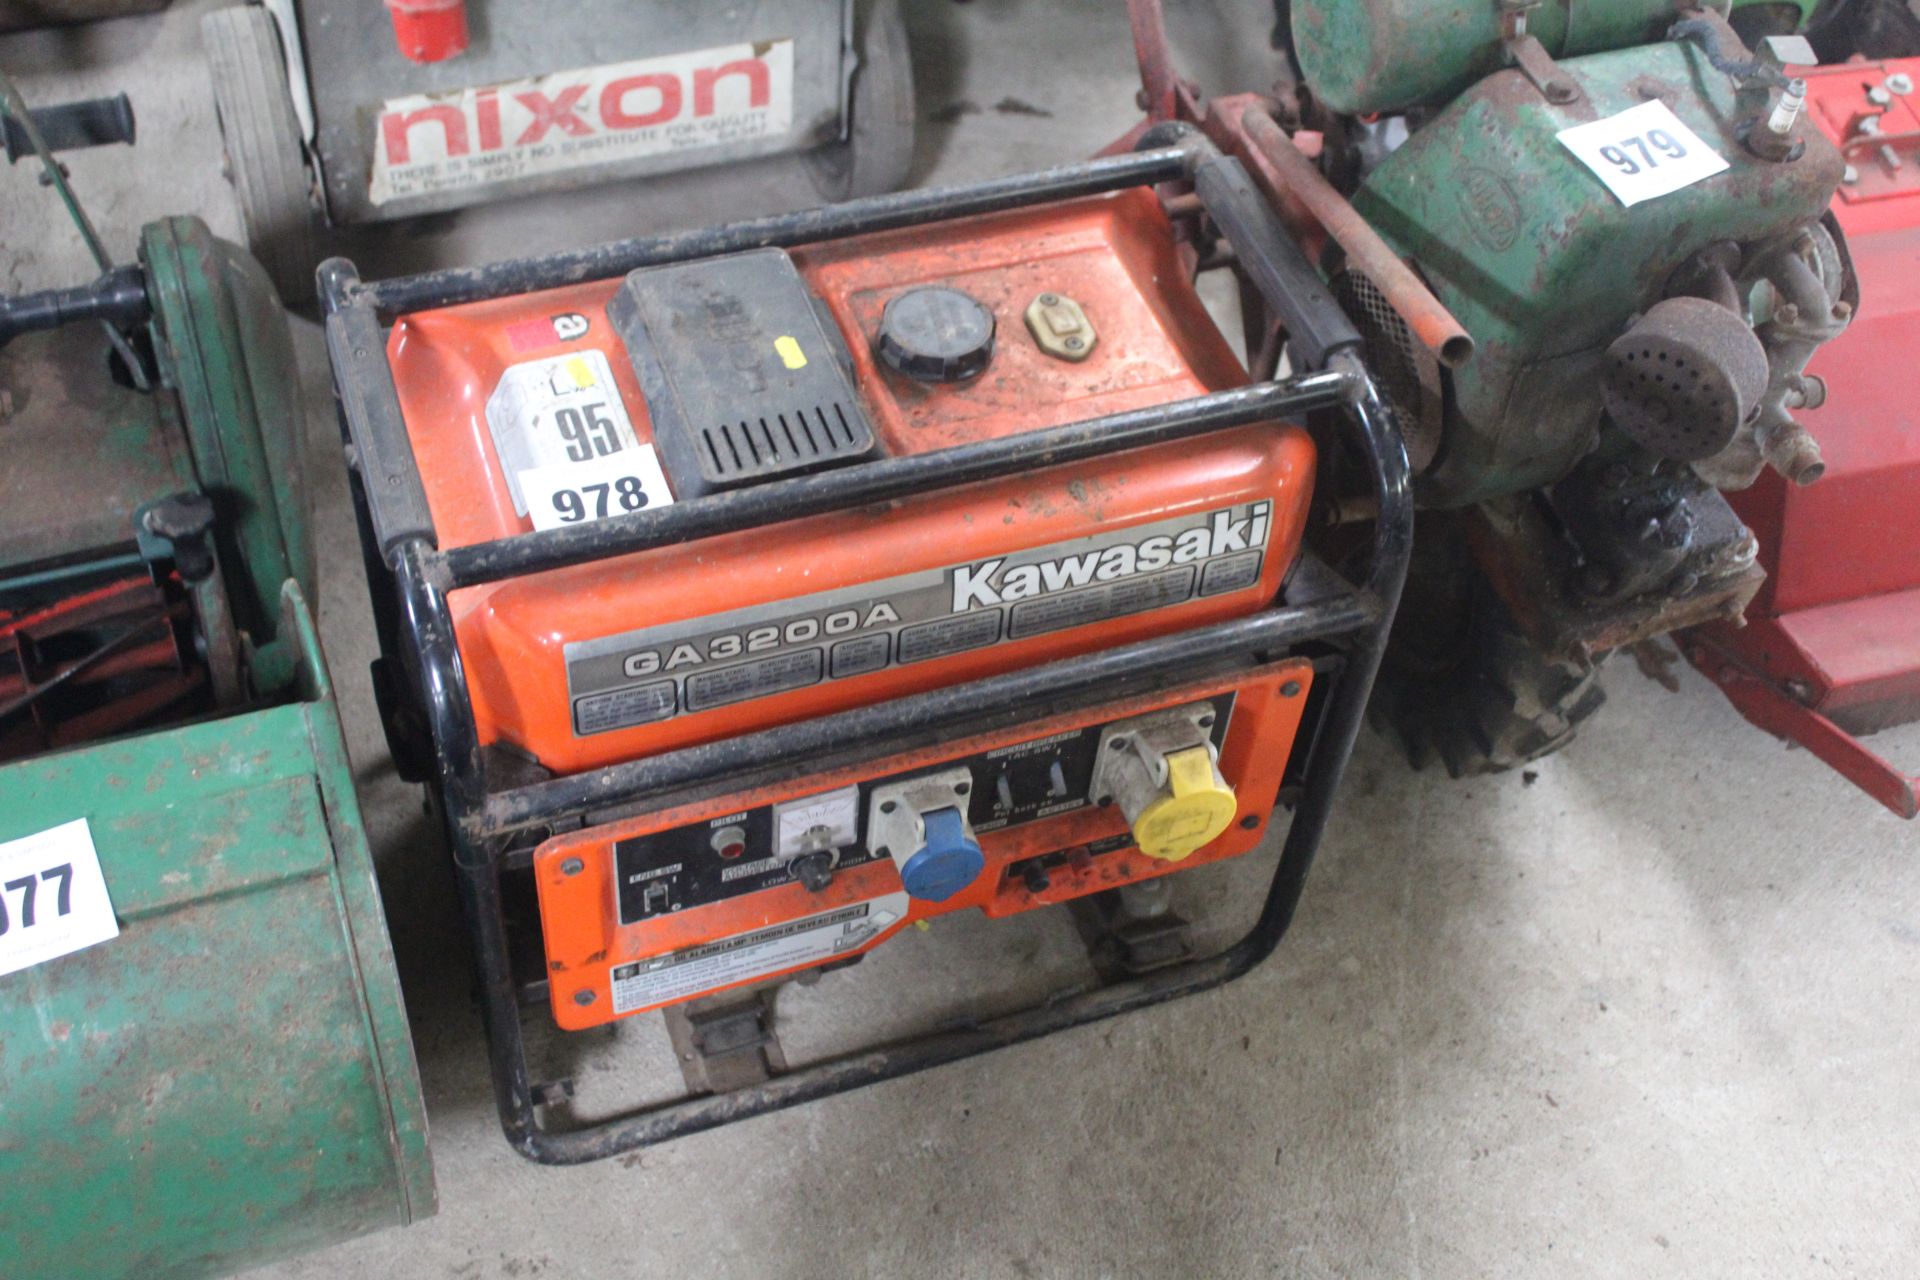 Kawasaki 3200A petrol generator.